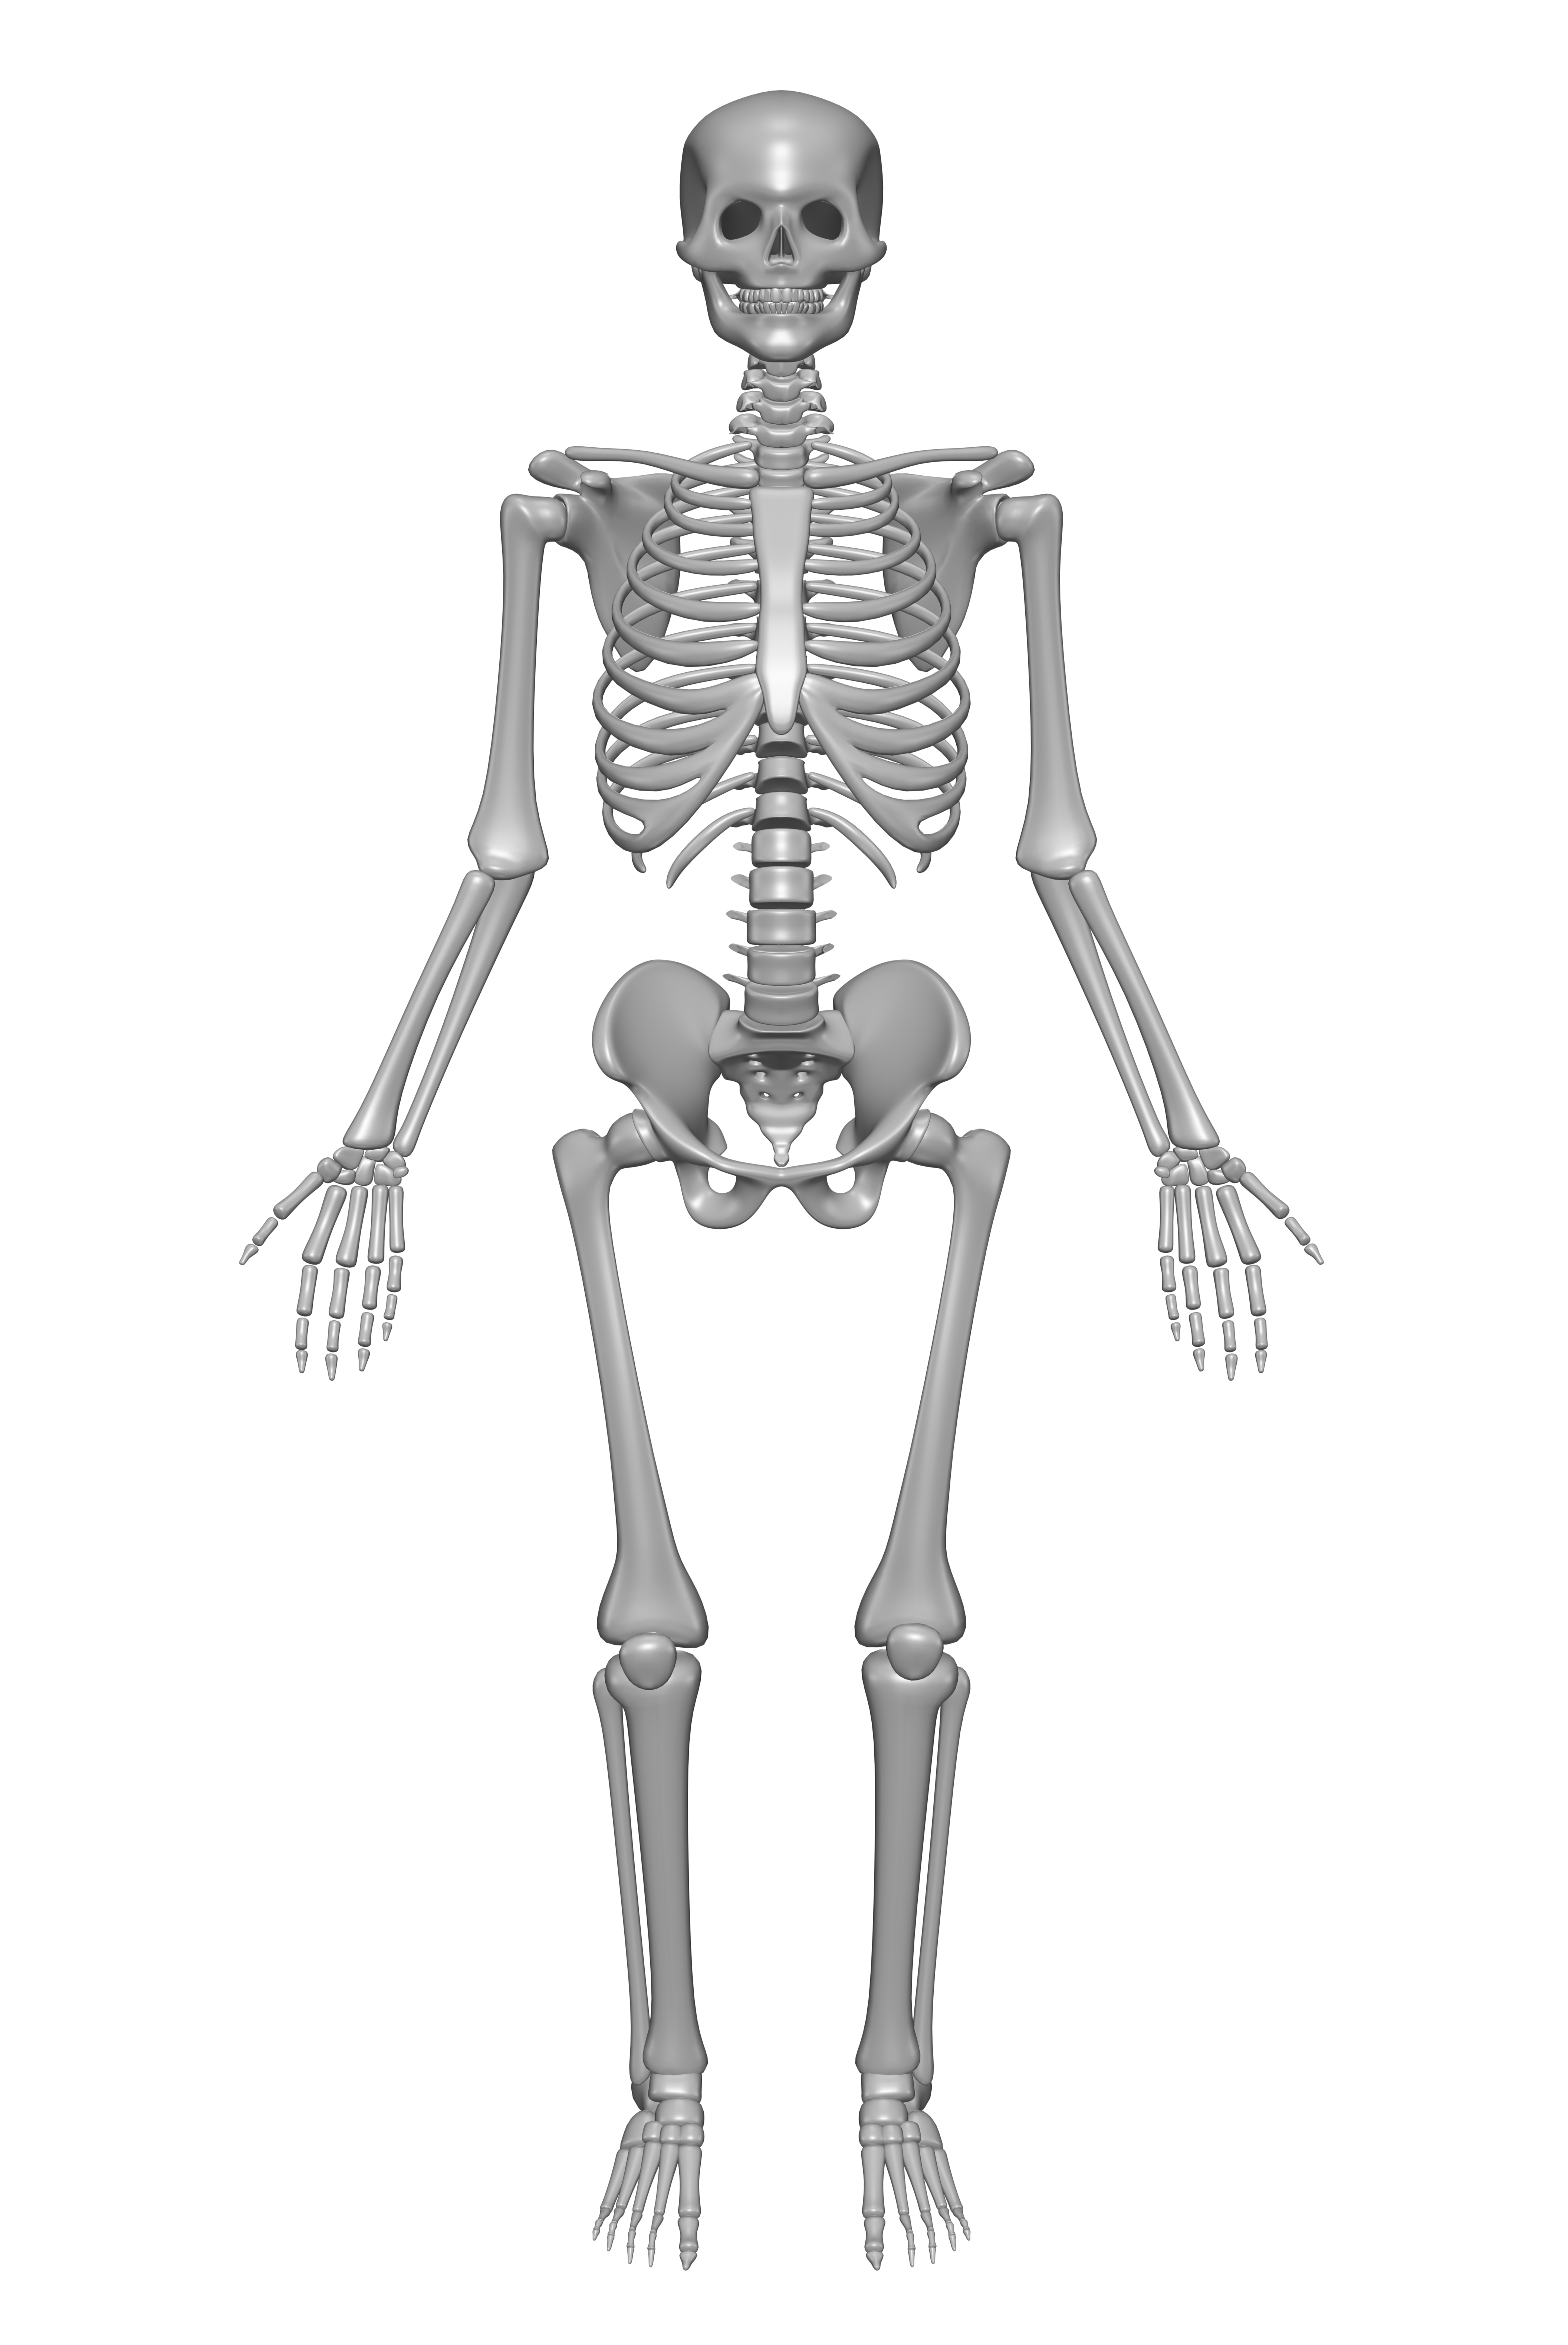 human-skeleton-drawing-free-image-download